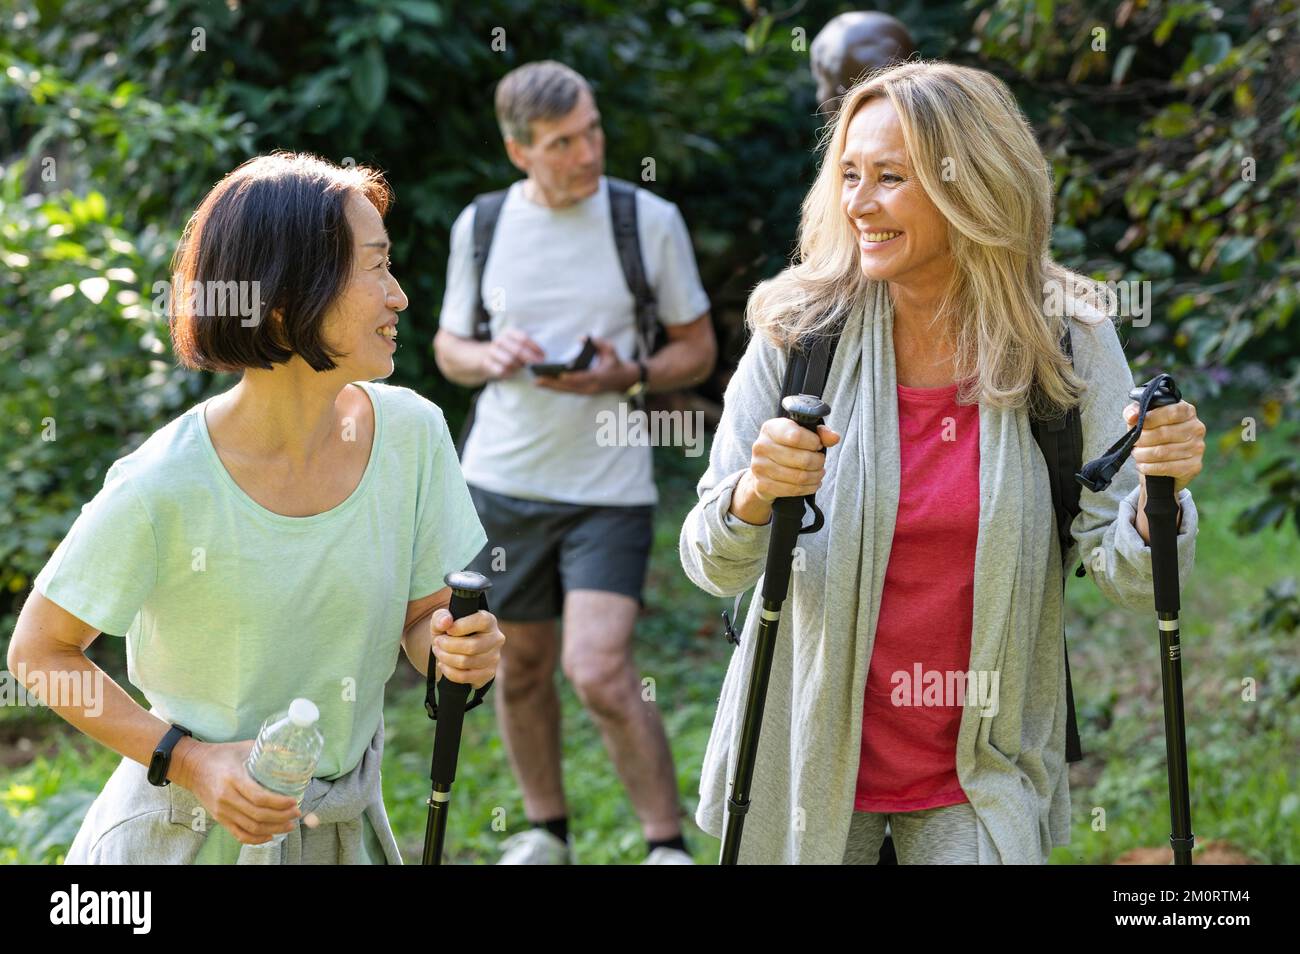 Deux dames d'âge moyen avec des bâtons de randonnée marchant dans les bois avec leurs partenaires derrière eux Banque D'Images